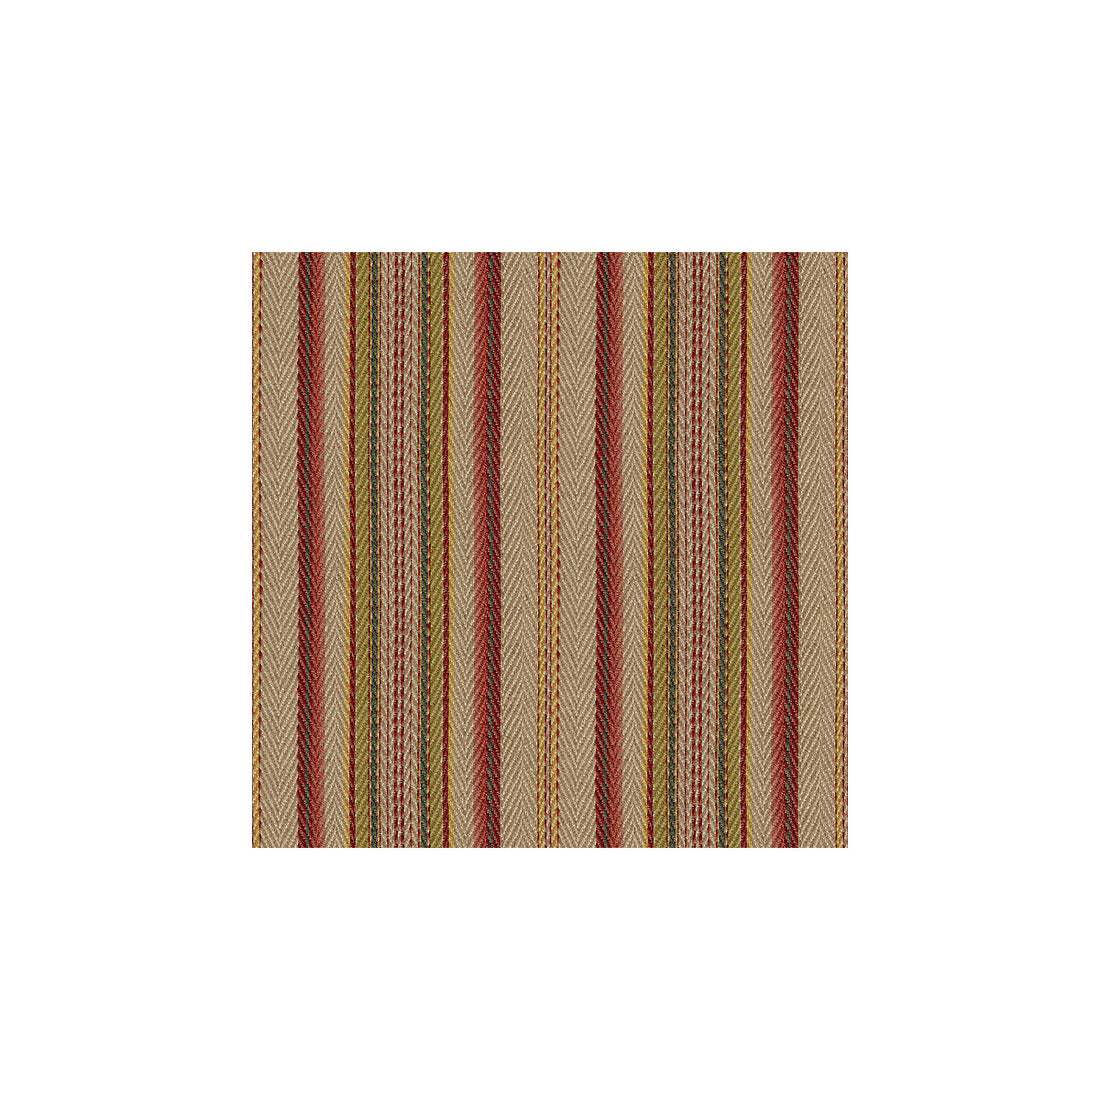 Kravet Design fabric in 32151-1619 color - pattern 32151.1619.0 - by Kravet Design